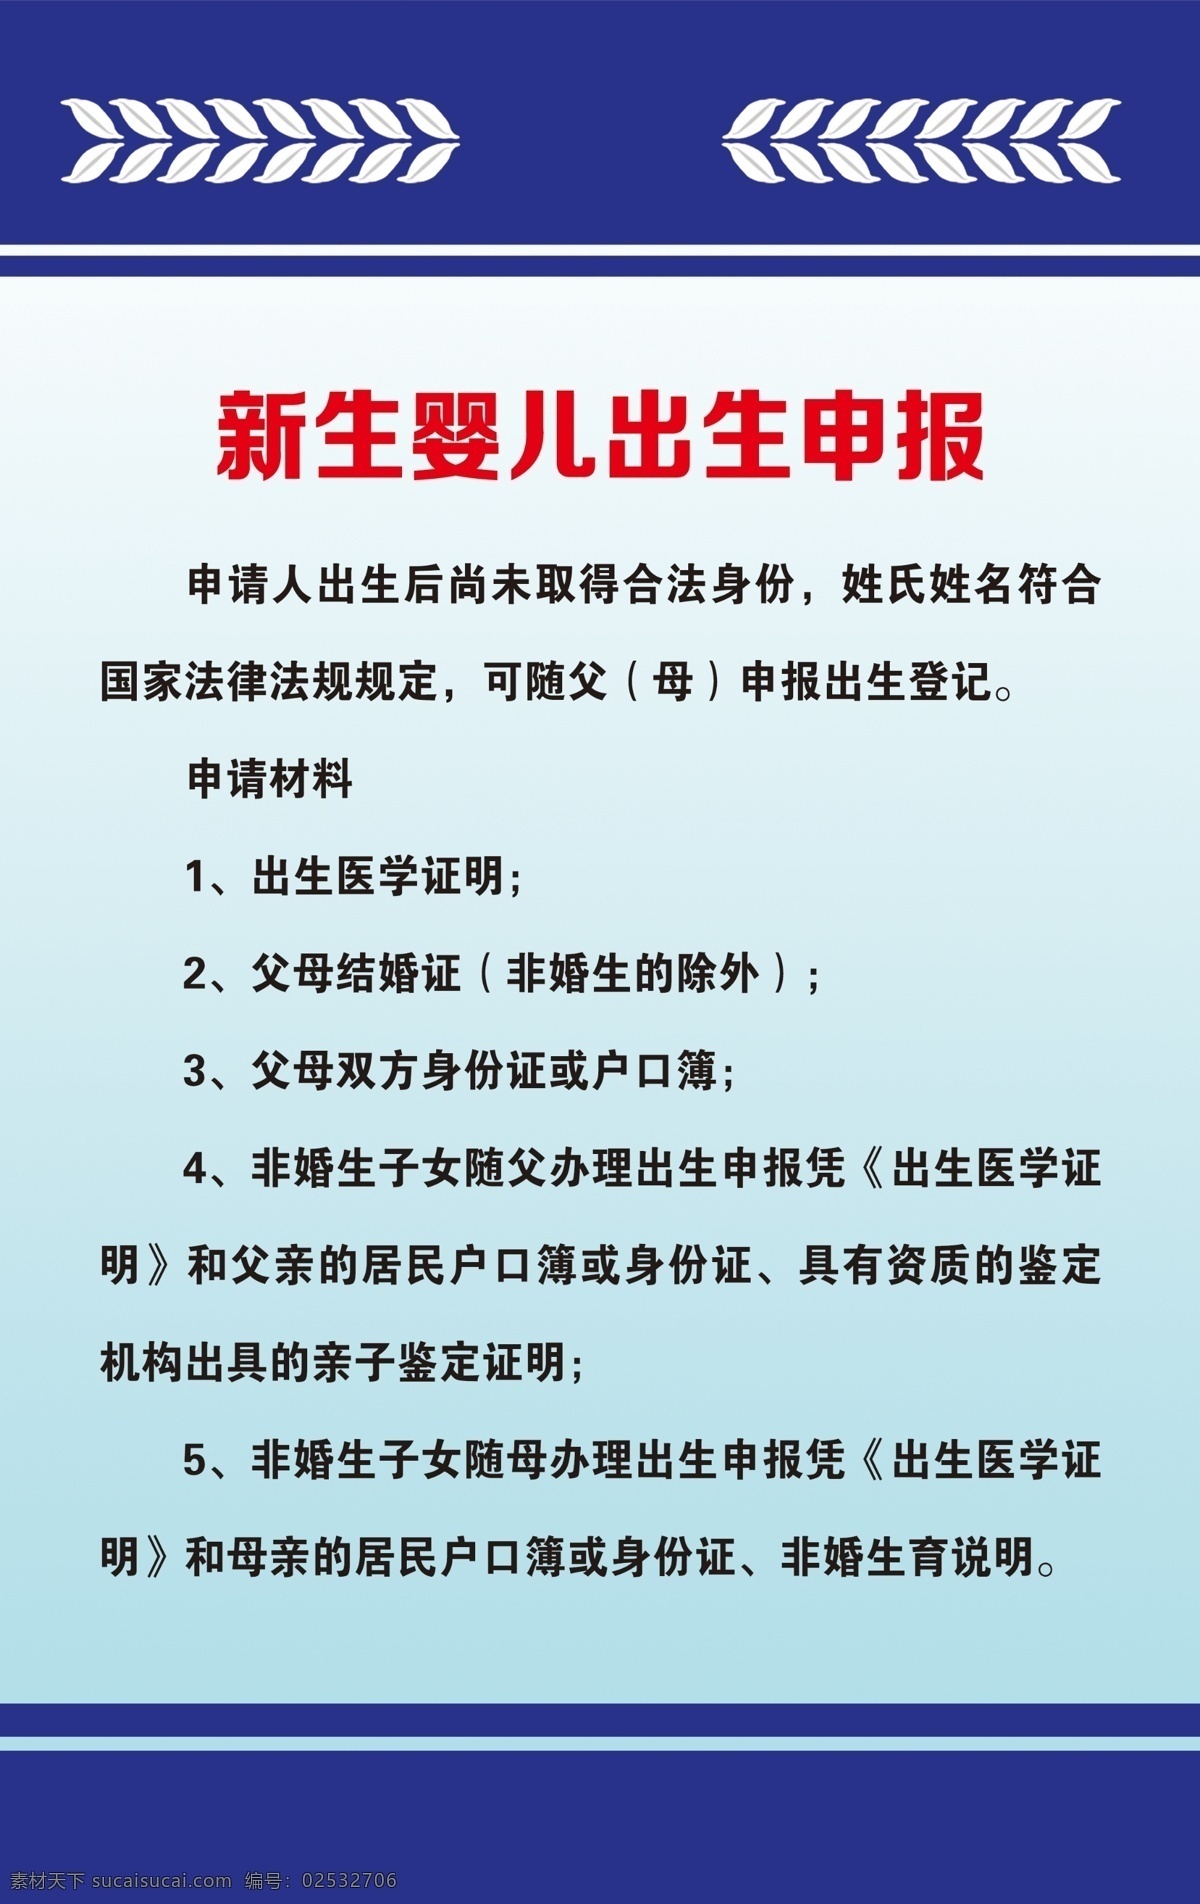 司法所展板 申报 中国司法 蓝色展板 工作职责 新生出生申报 司法所 版面